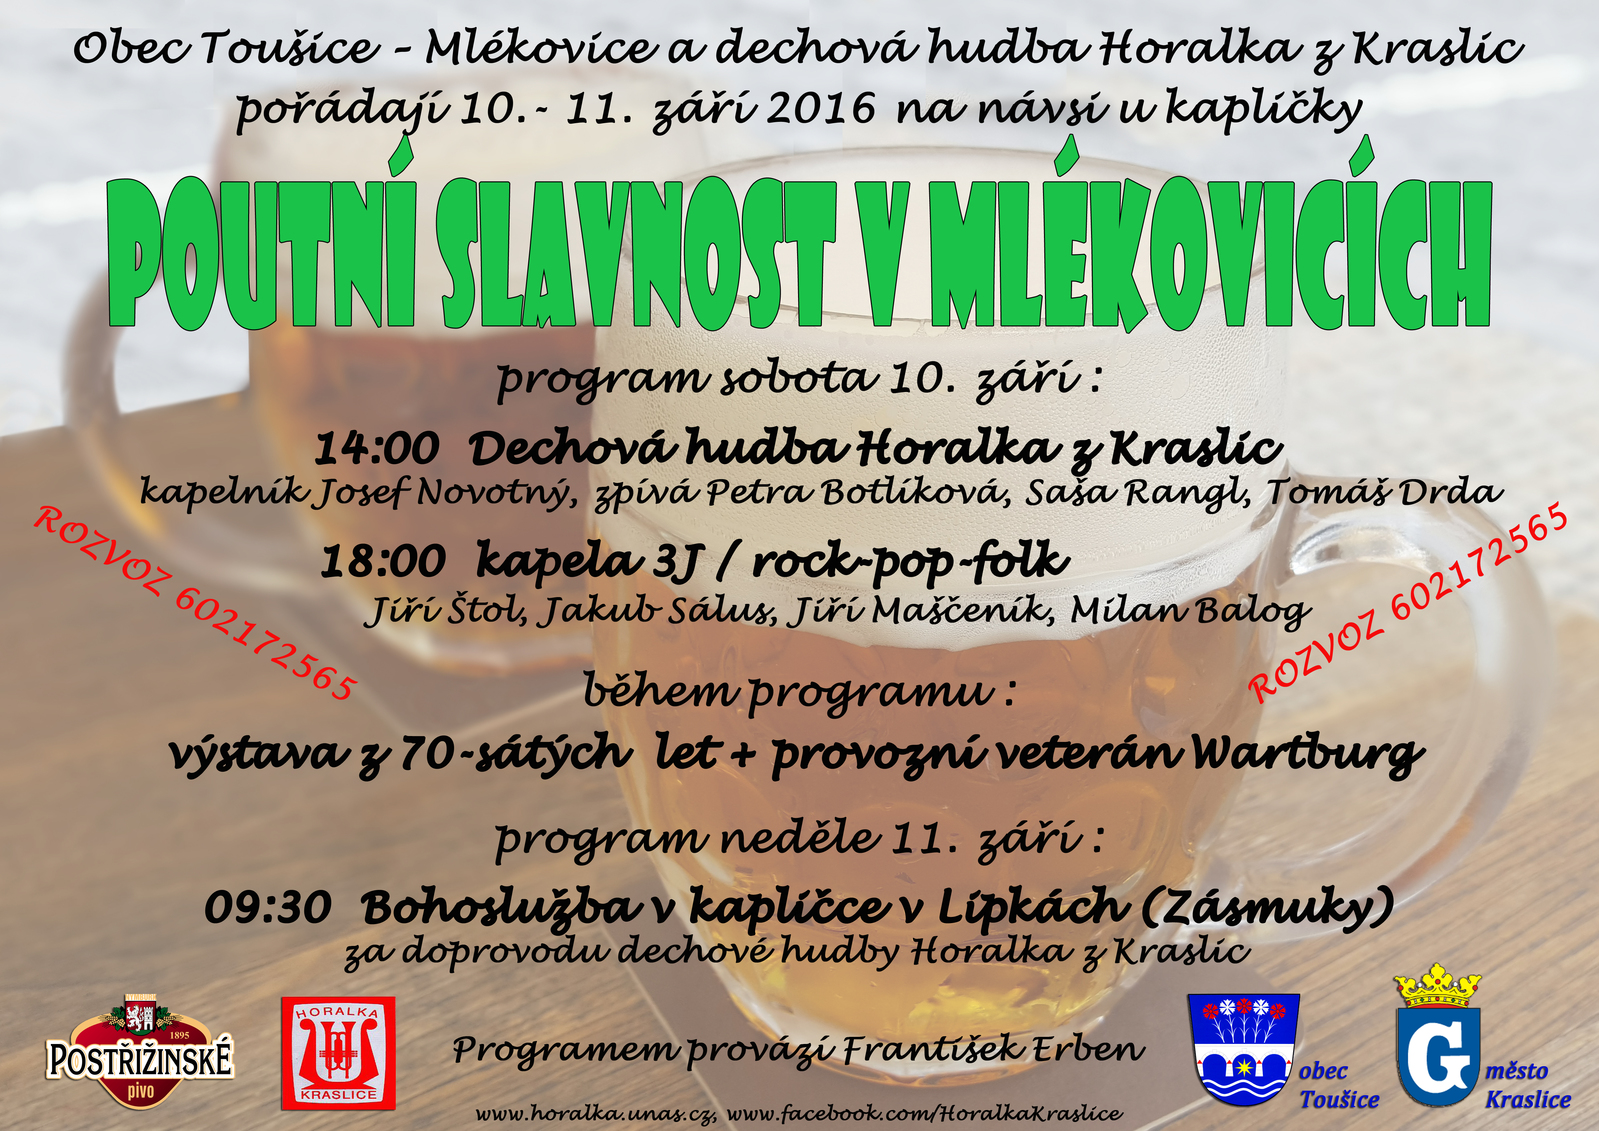 Plakát_Poutní slavnost Mlékovicich_ i s rozvozem!.jpg